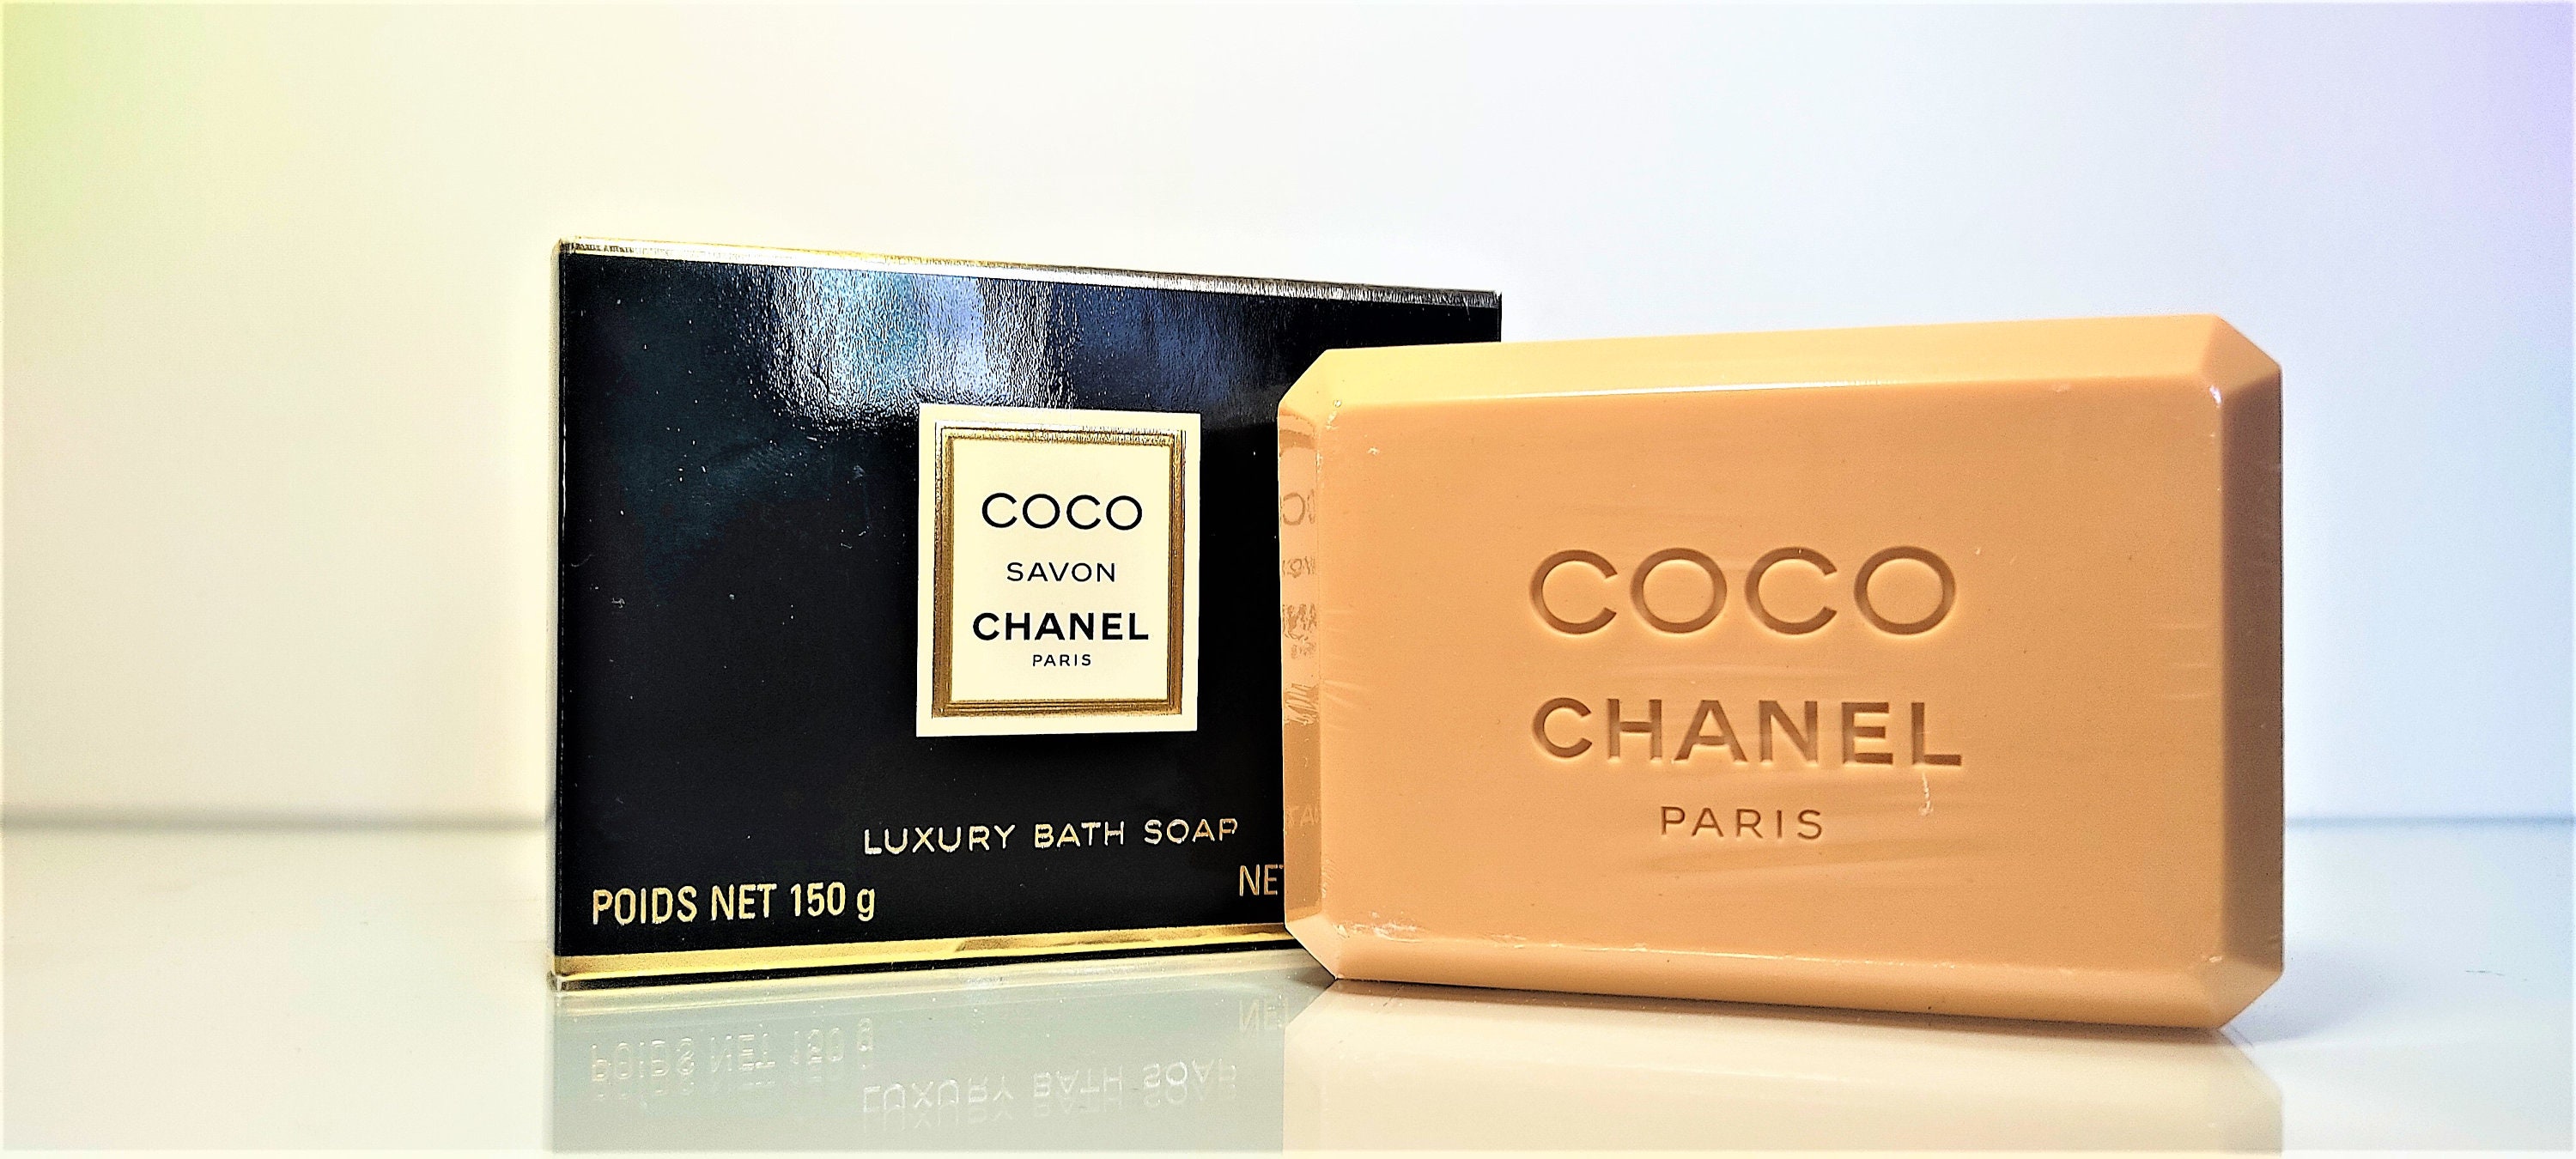 Coco Chanel 1984 Perfumed Soap Luxury Bath Soap 150 Gr NET WT